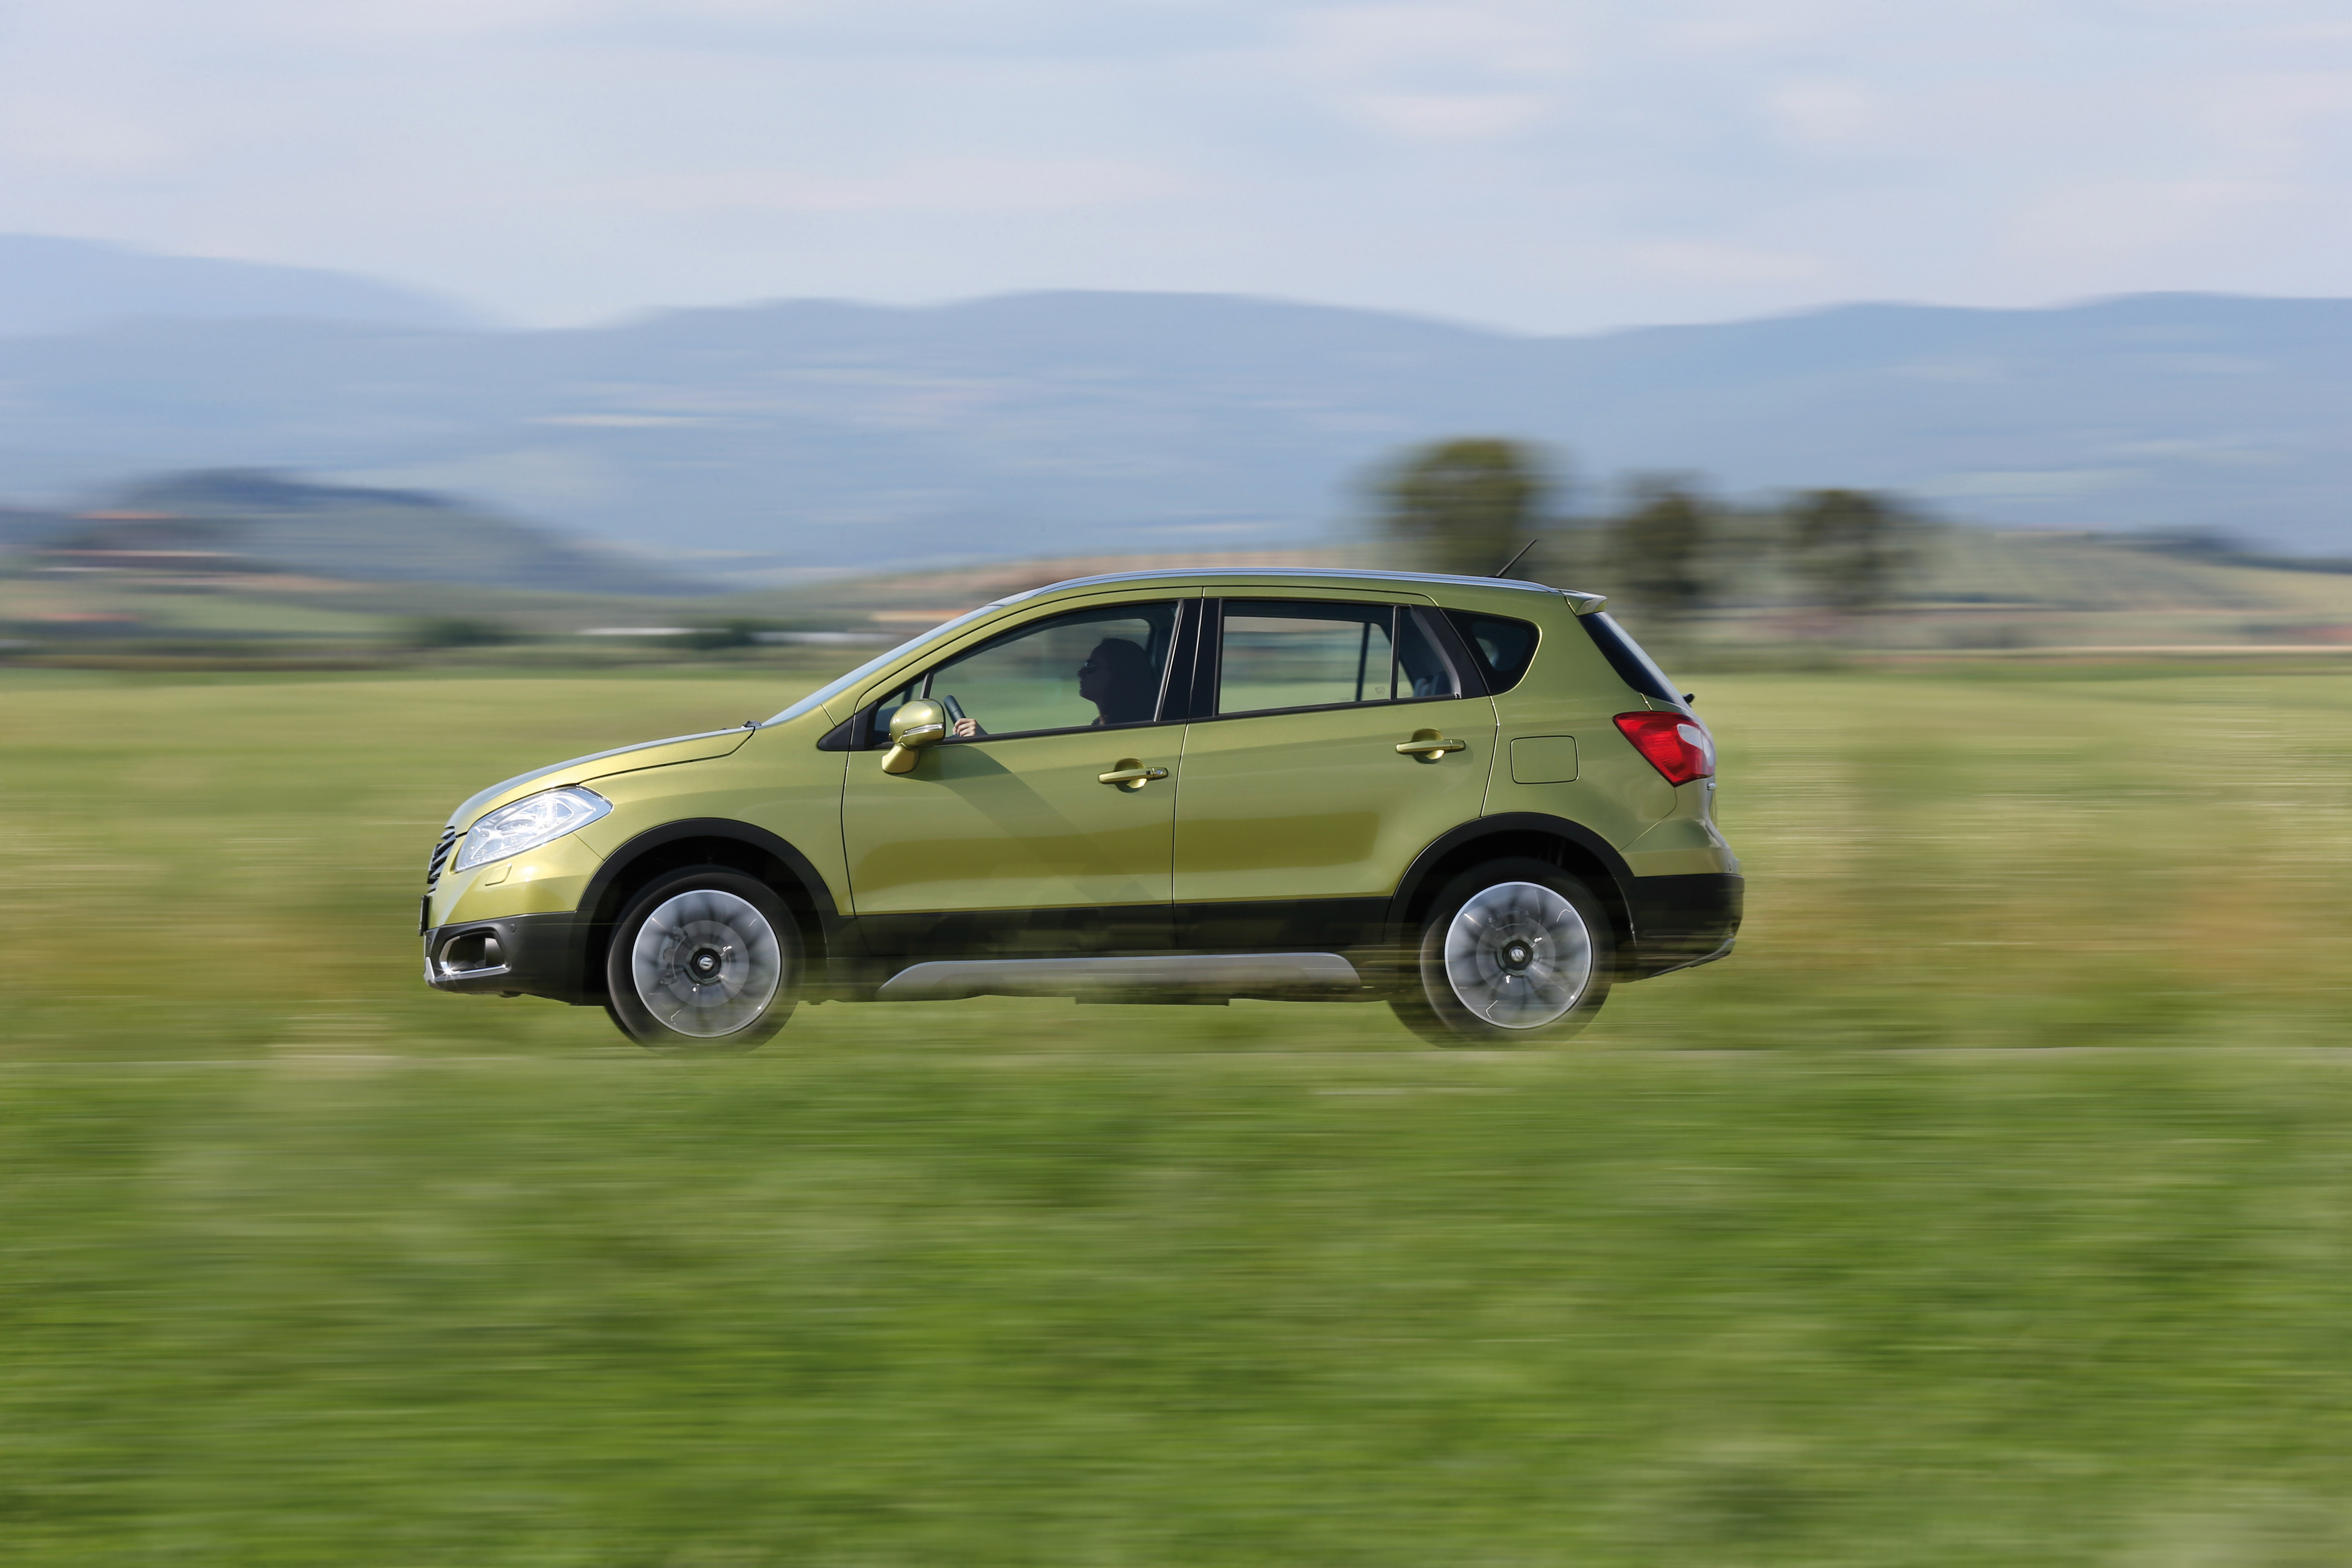 Mobil Auto TV – Suzuki SX4 i S Cross sa popustom od 500-1000 evra